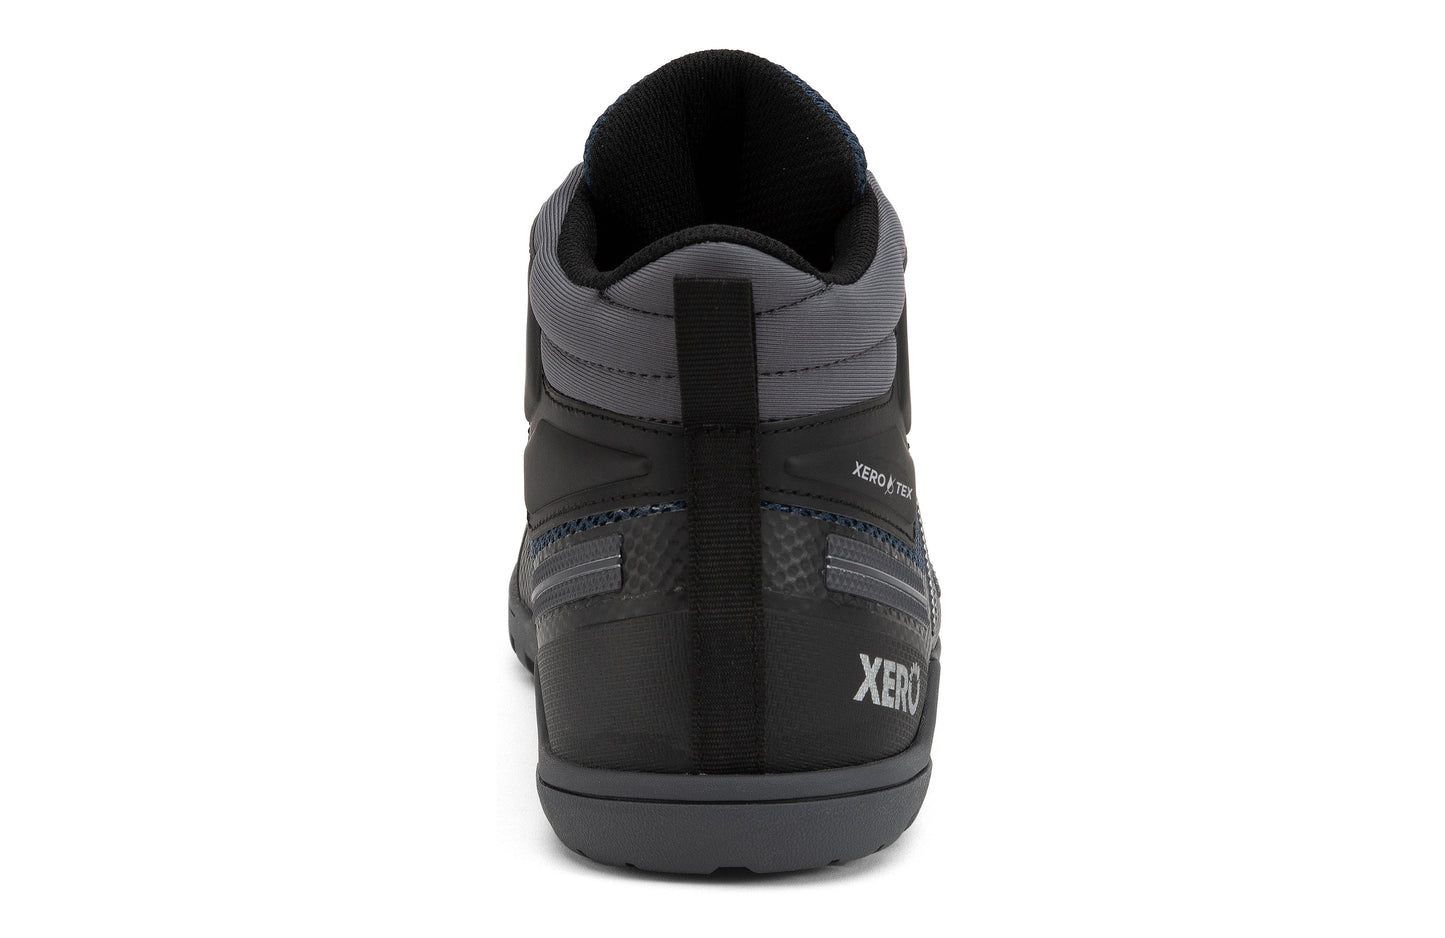 Xero Shoes Xcursion Fusion barfods støvler til mænd i farven moonlit blue / black, bagfra